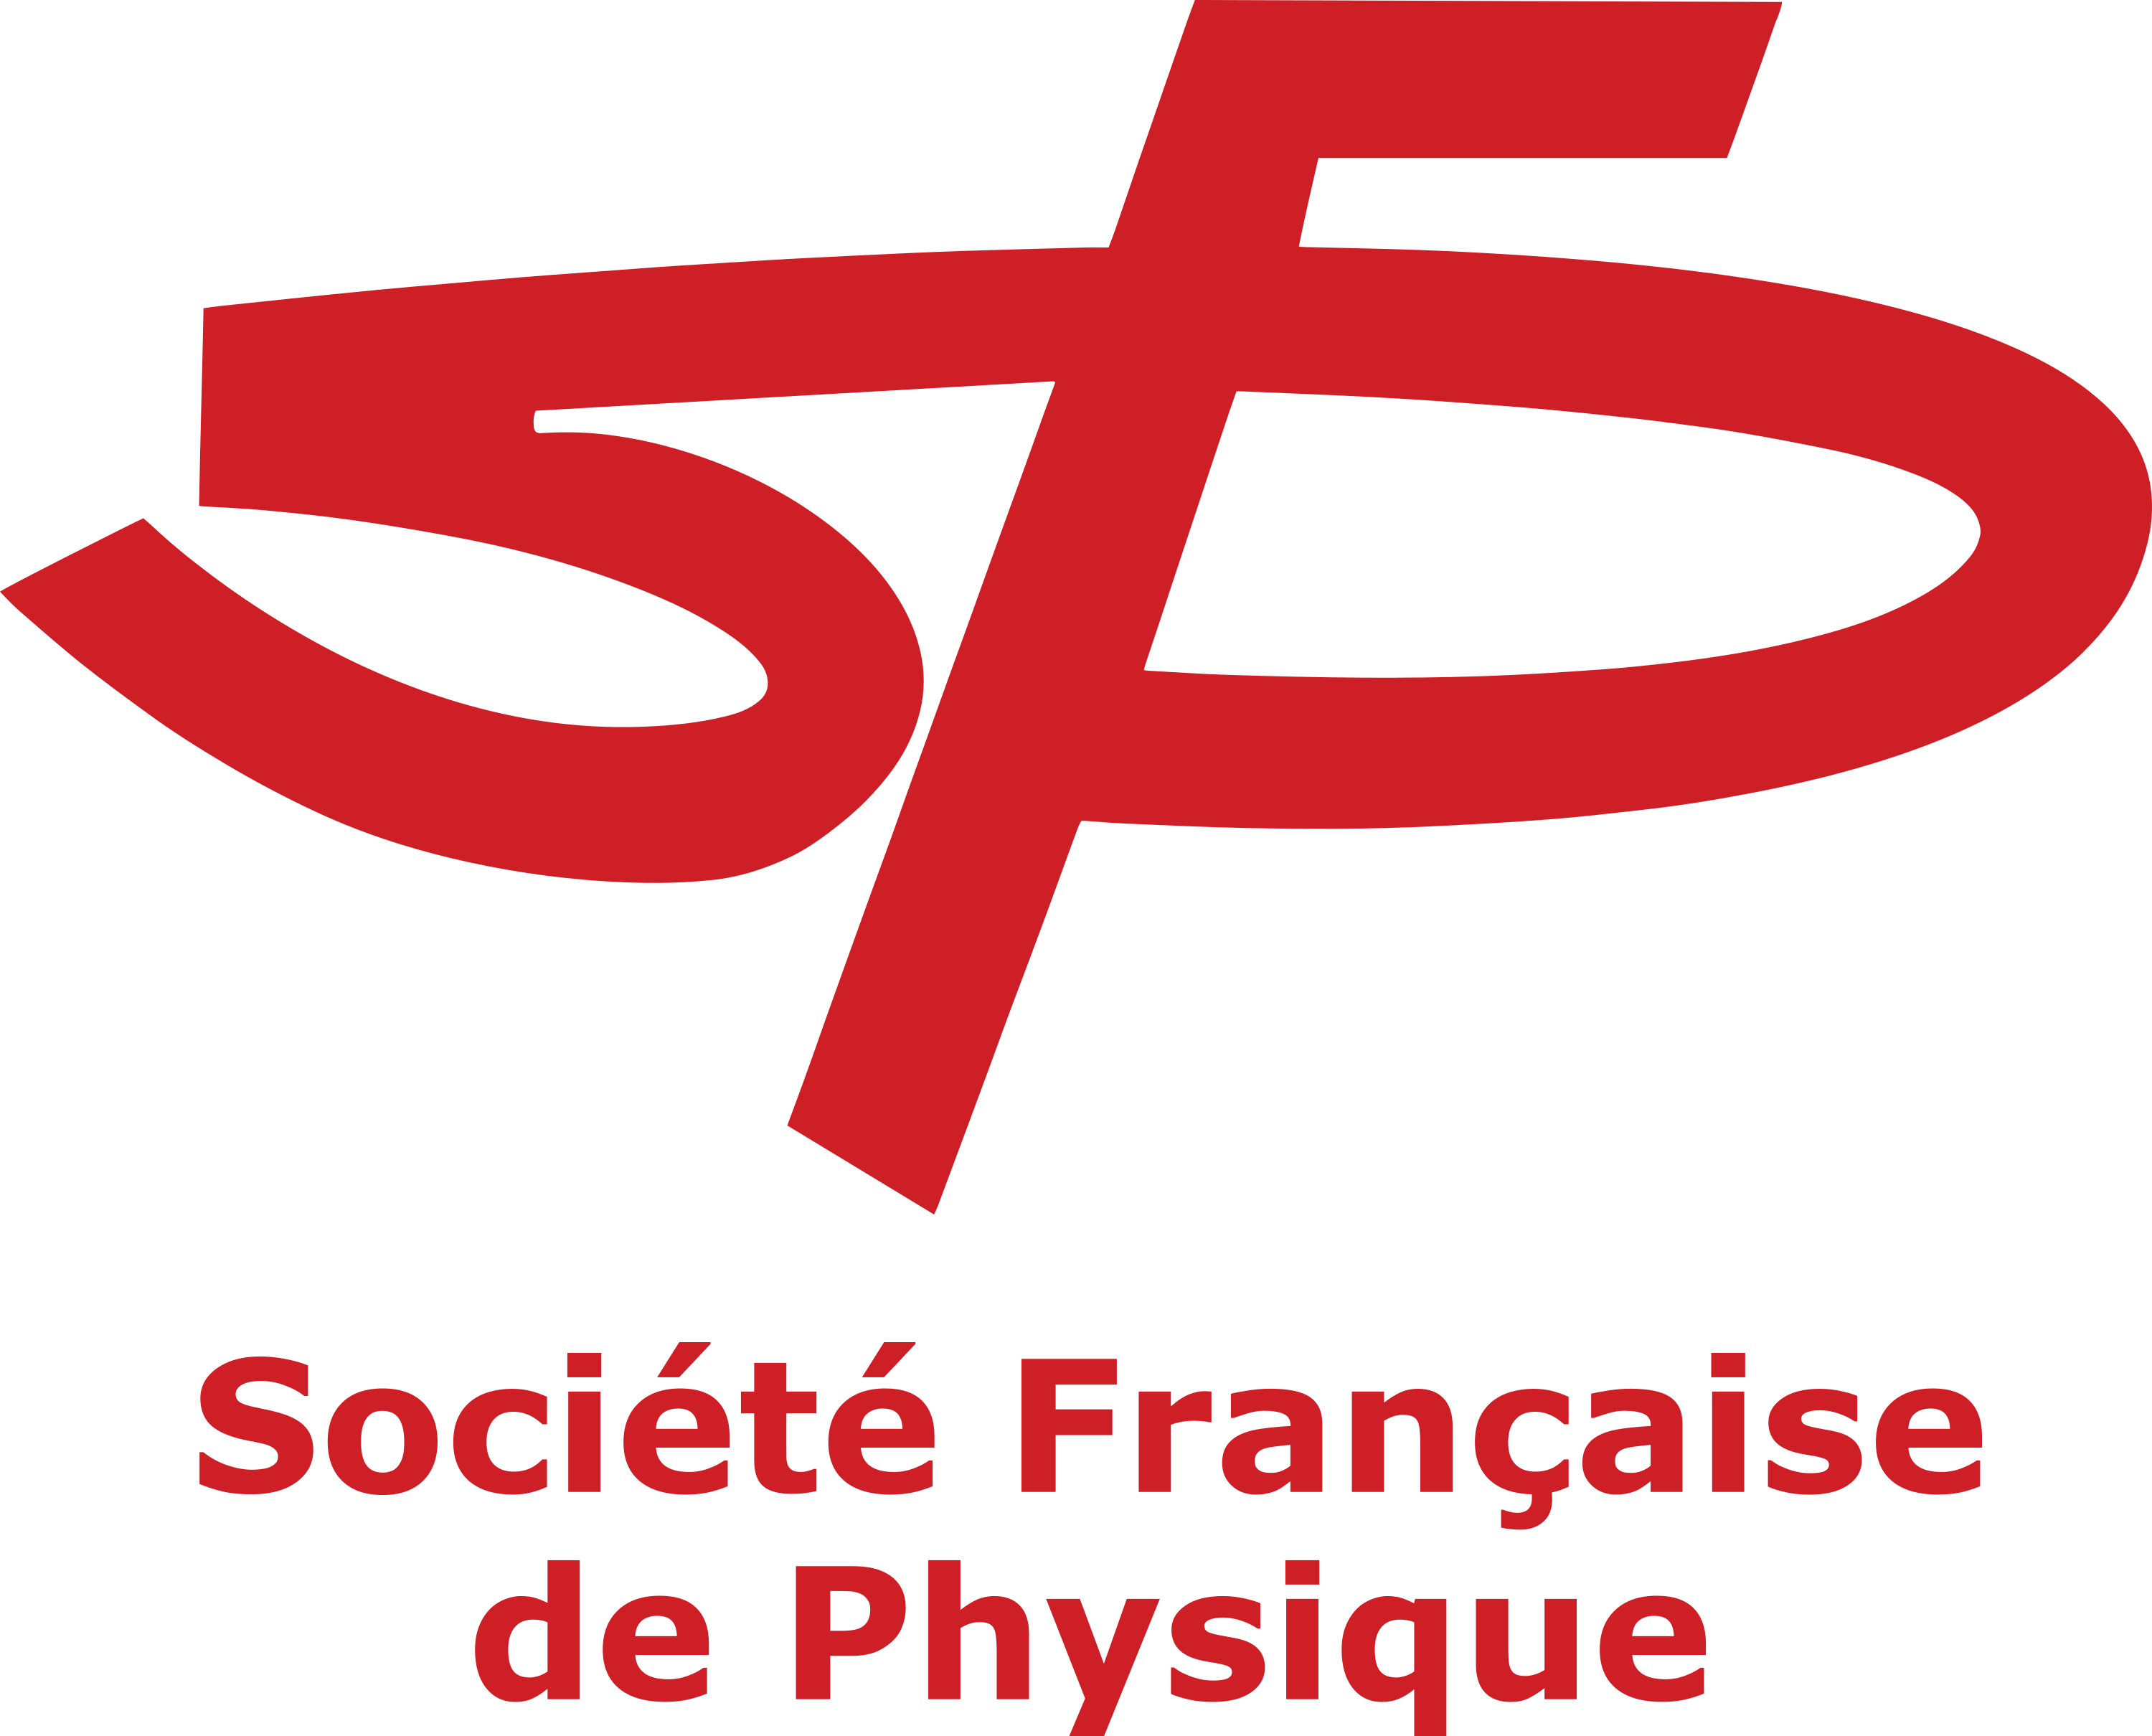 SFP Logo